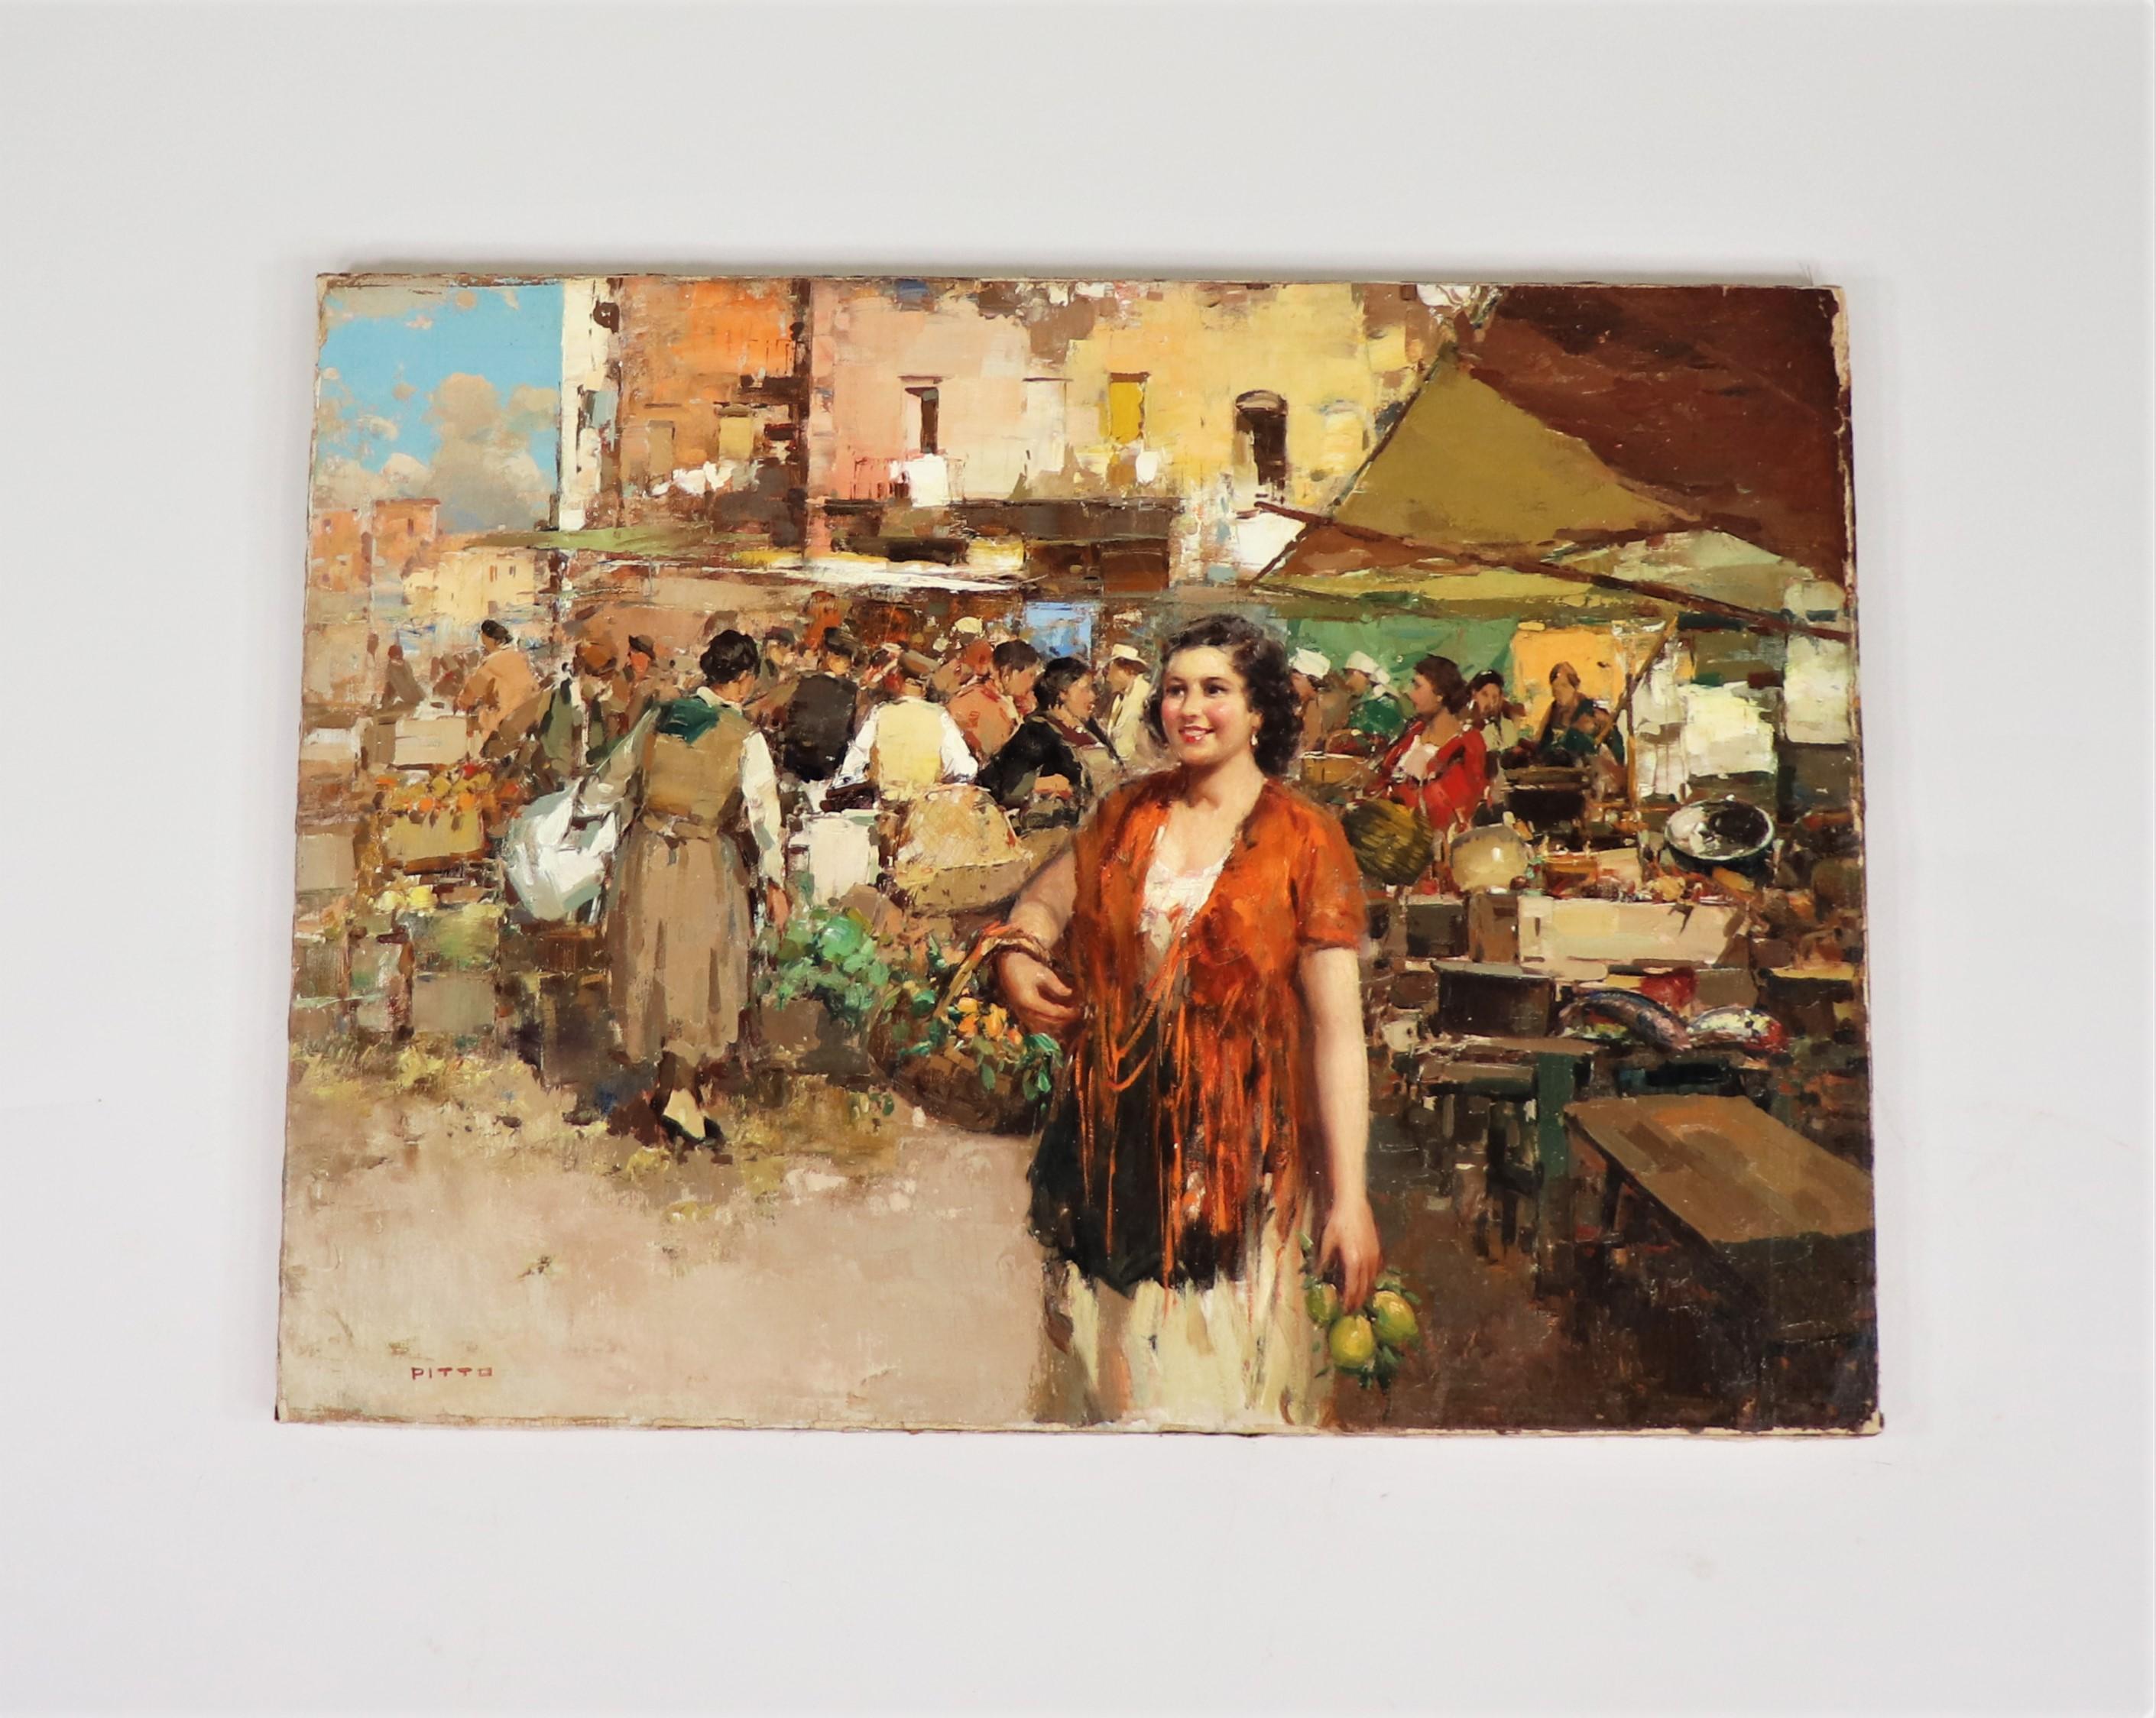 Giuseppe Pitto (Italien 1857 - 1928) est souvent connu pour ses peintures représentant de jolies femmes dans les marchés de rue italiens. Cette scène peinte de manière exubérante est réalisée dans le style réaliste. Le réalisme est devenu un